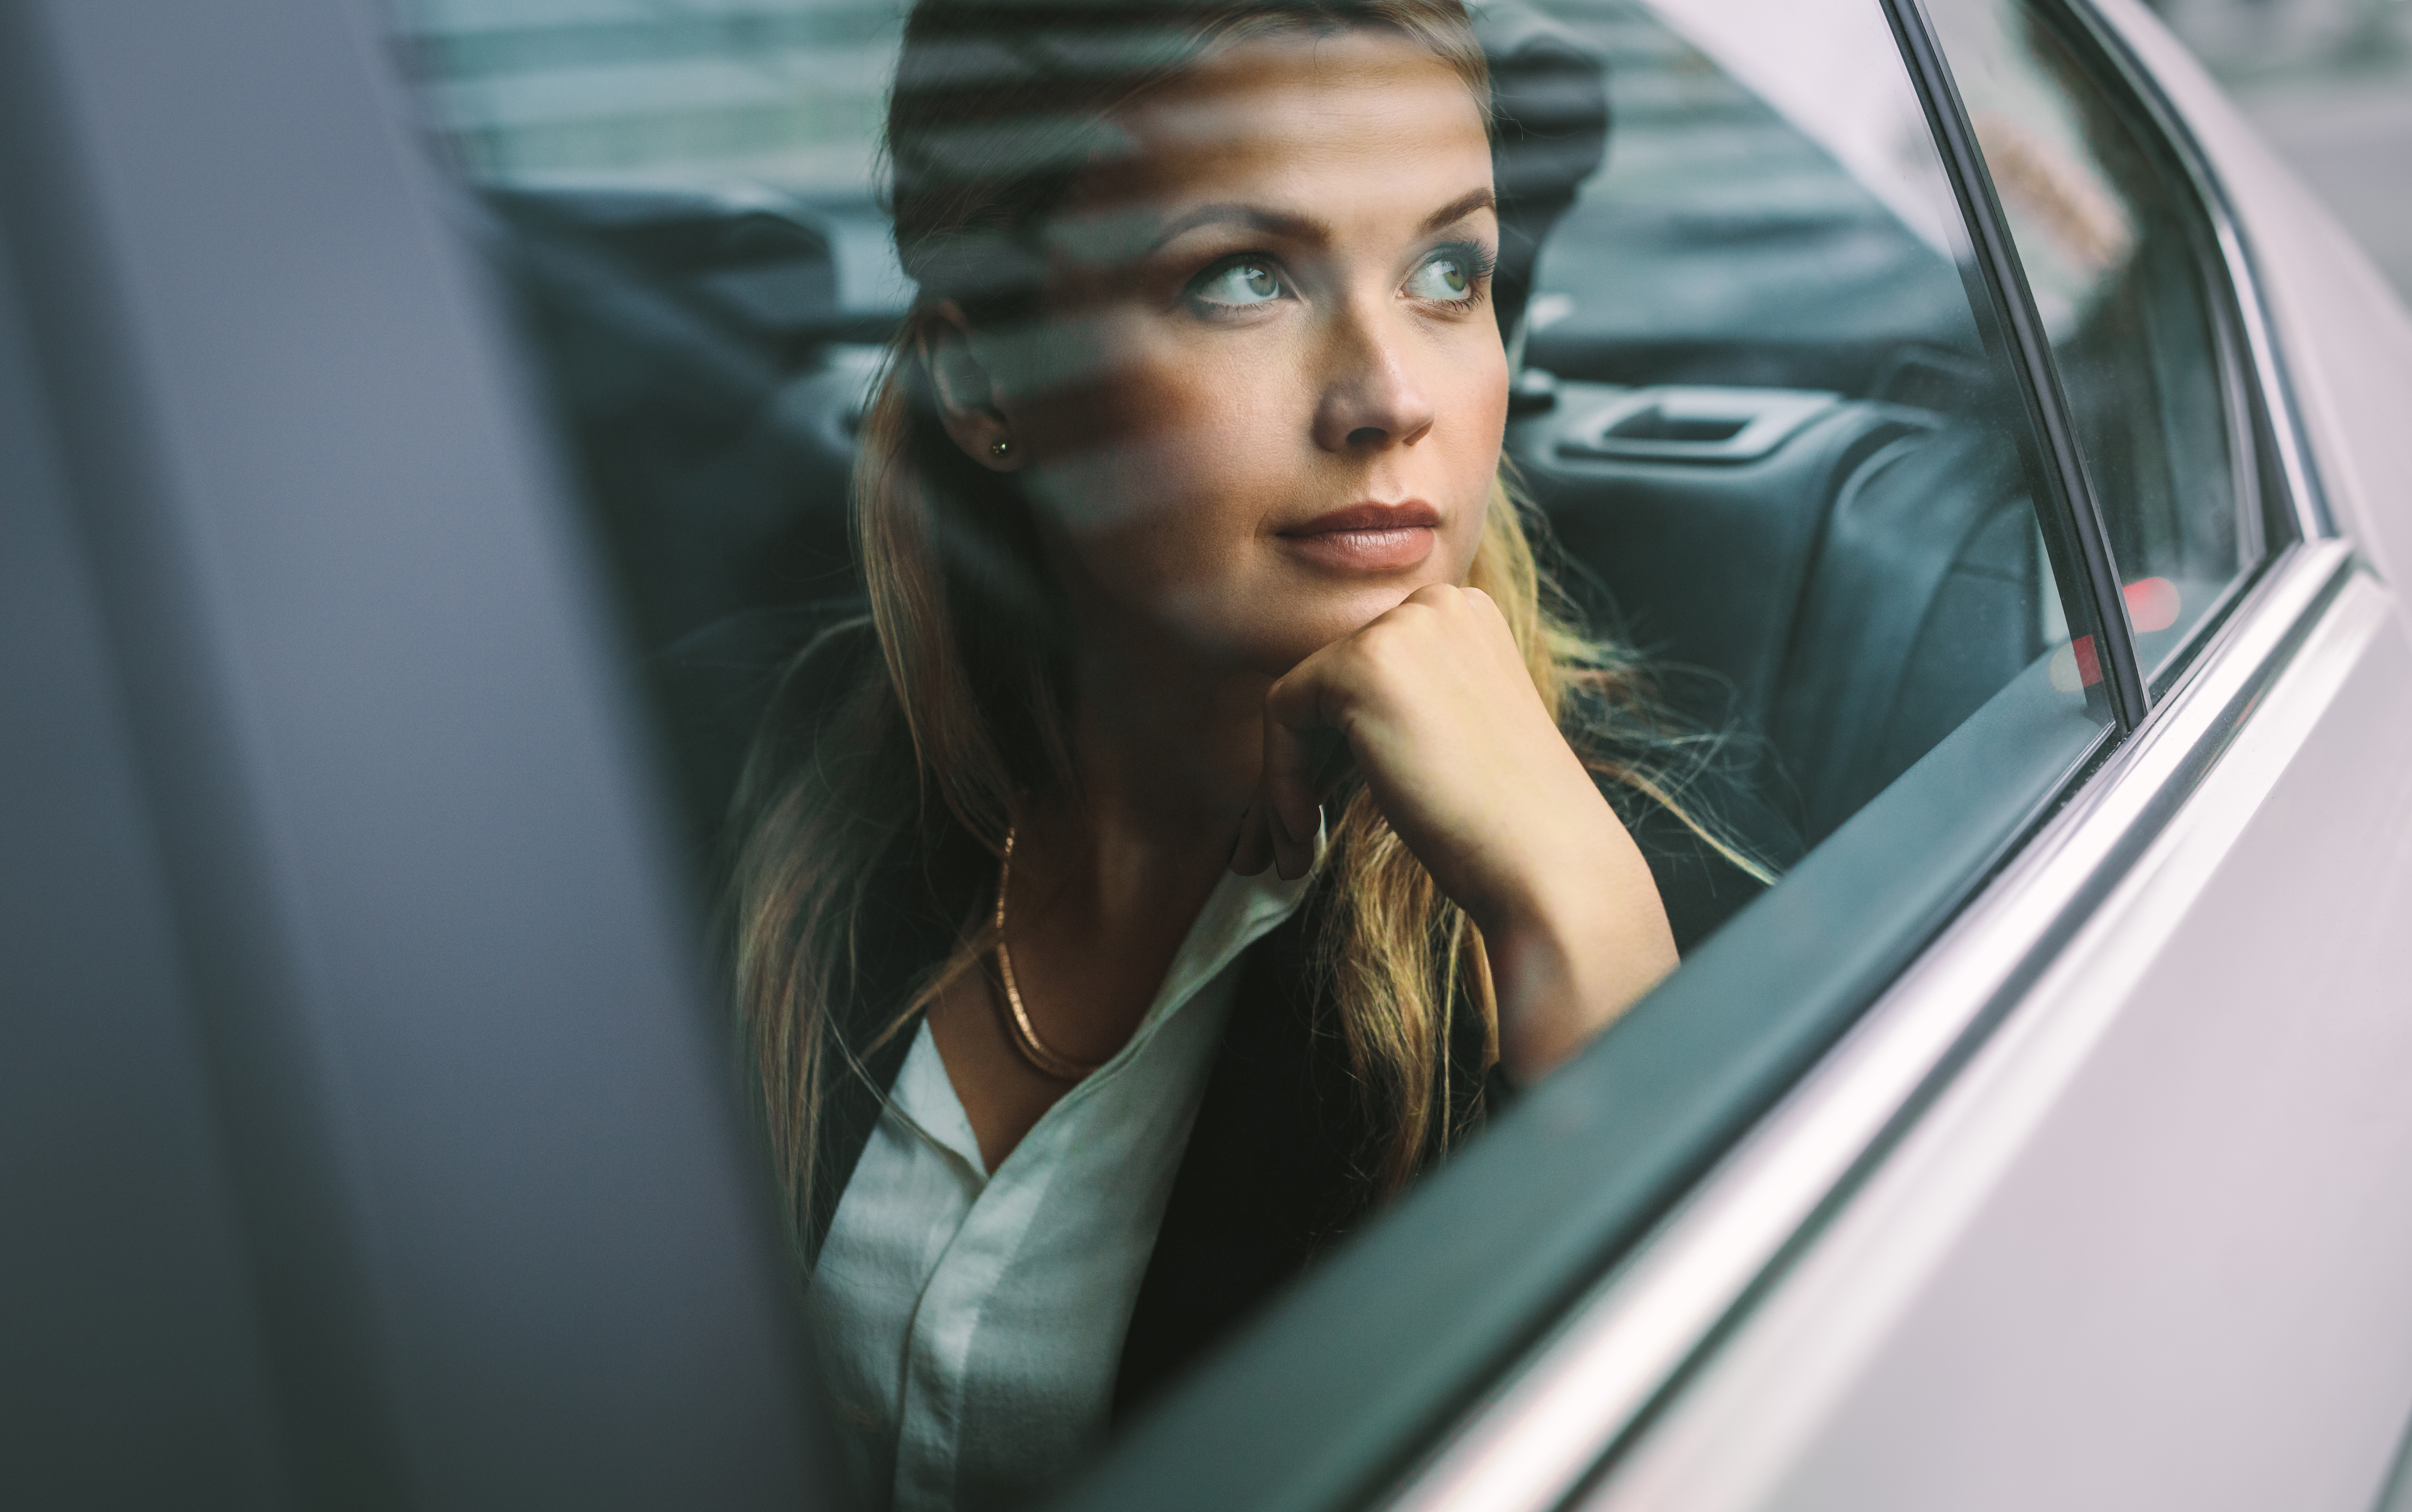 Woman in car | Source: Shutterstock